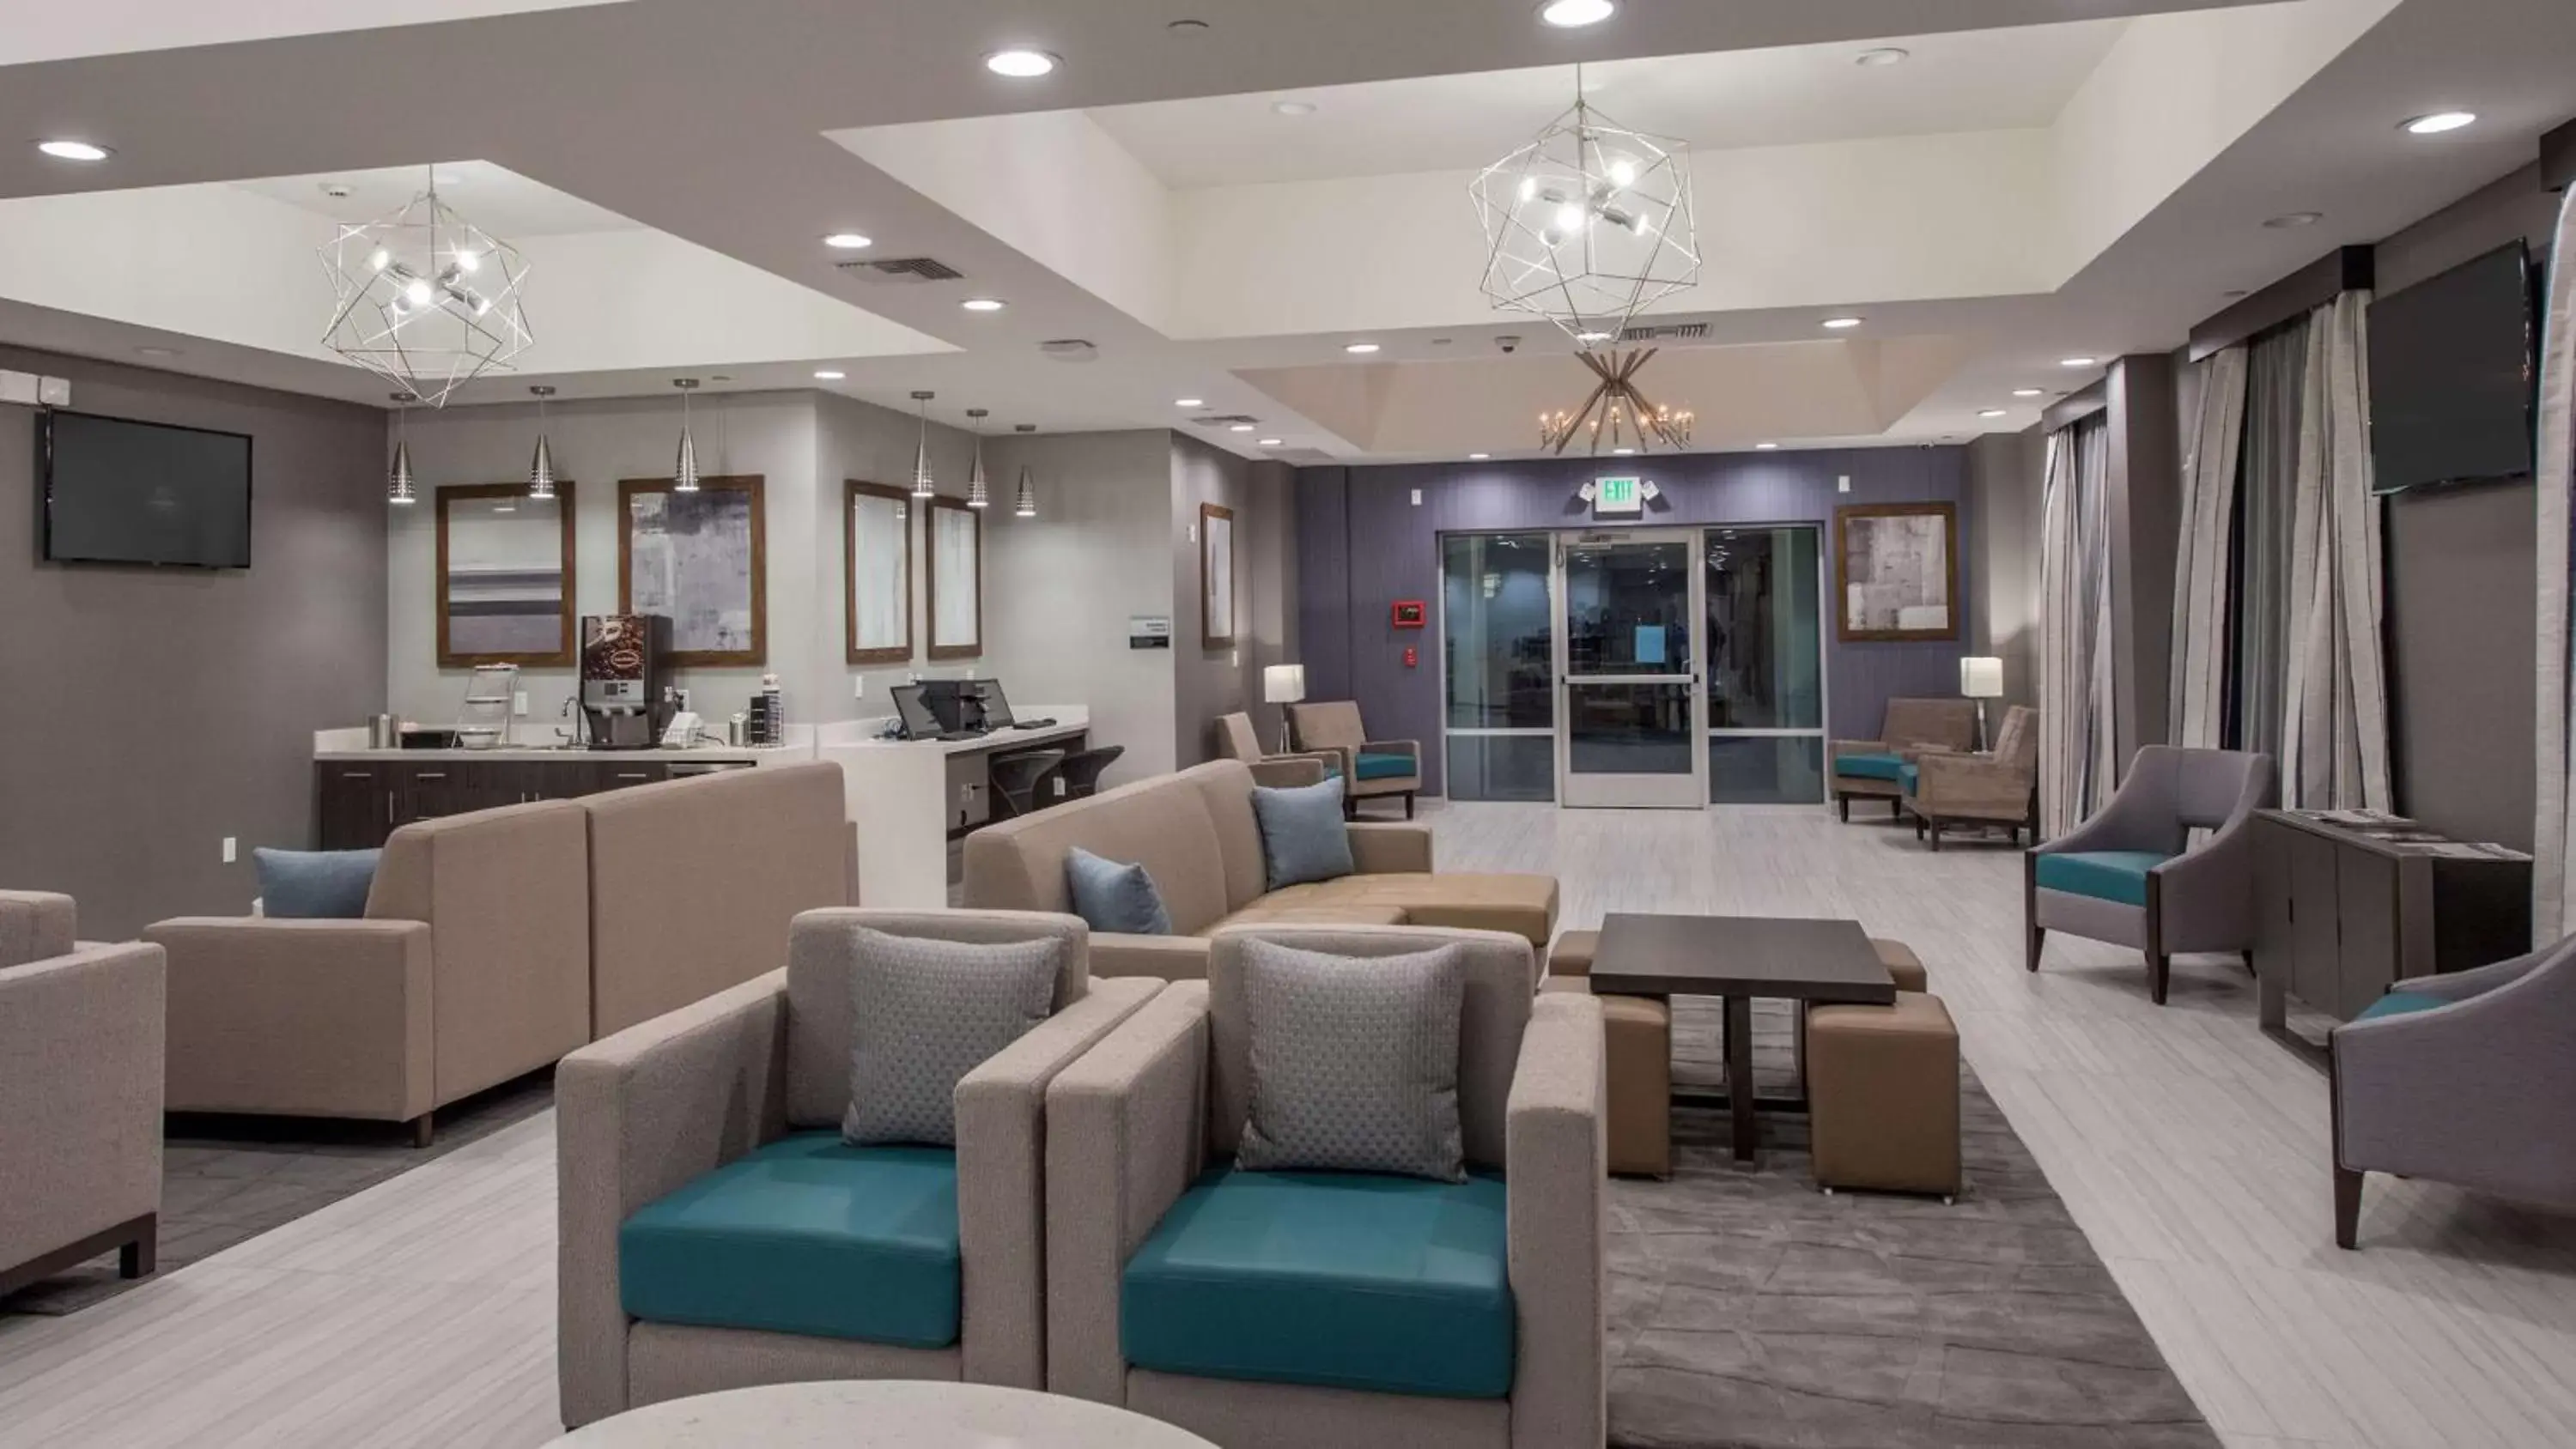 Lobby or reception in Best Western Plus Gardena-Los Angeles Inn & Suites